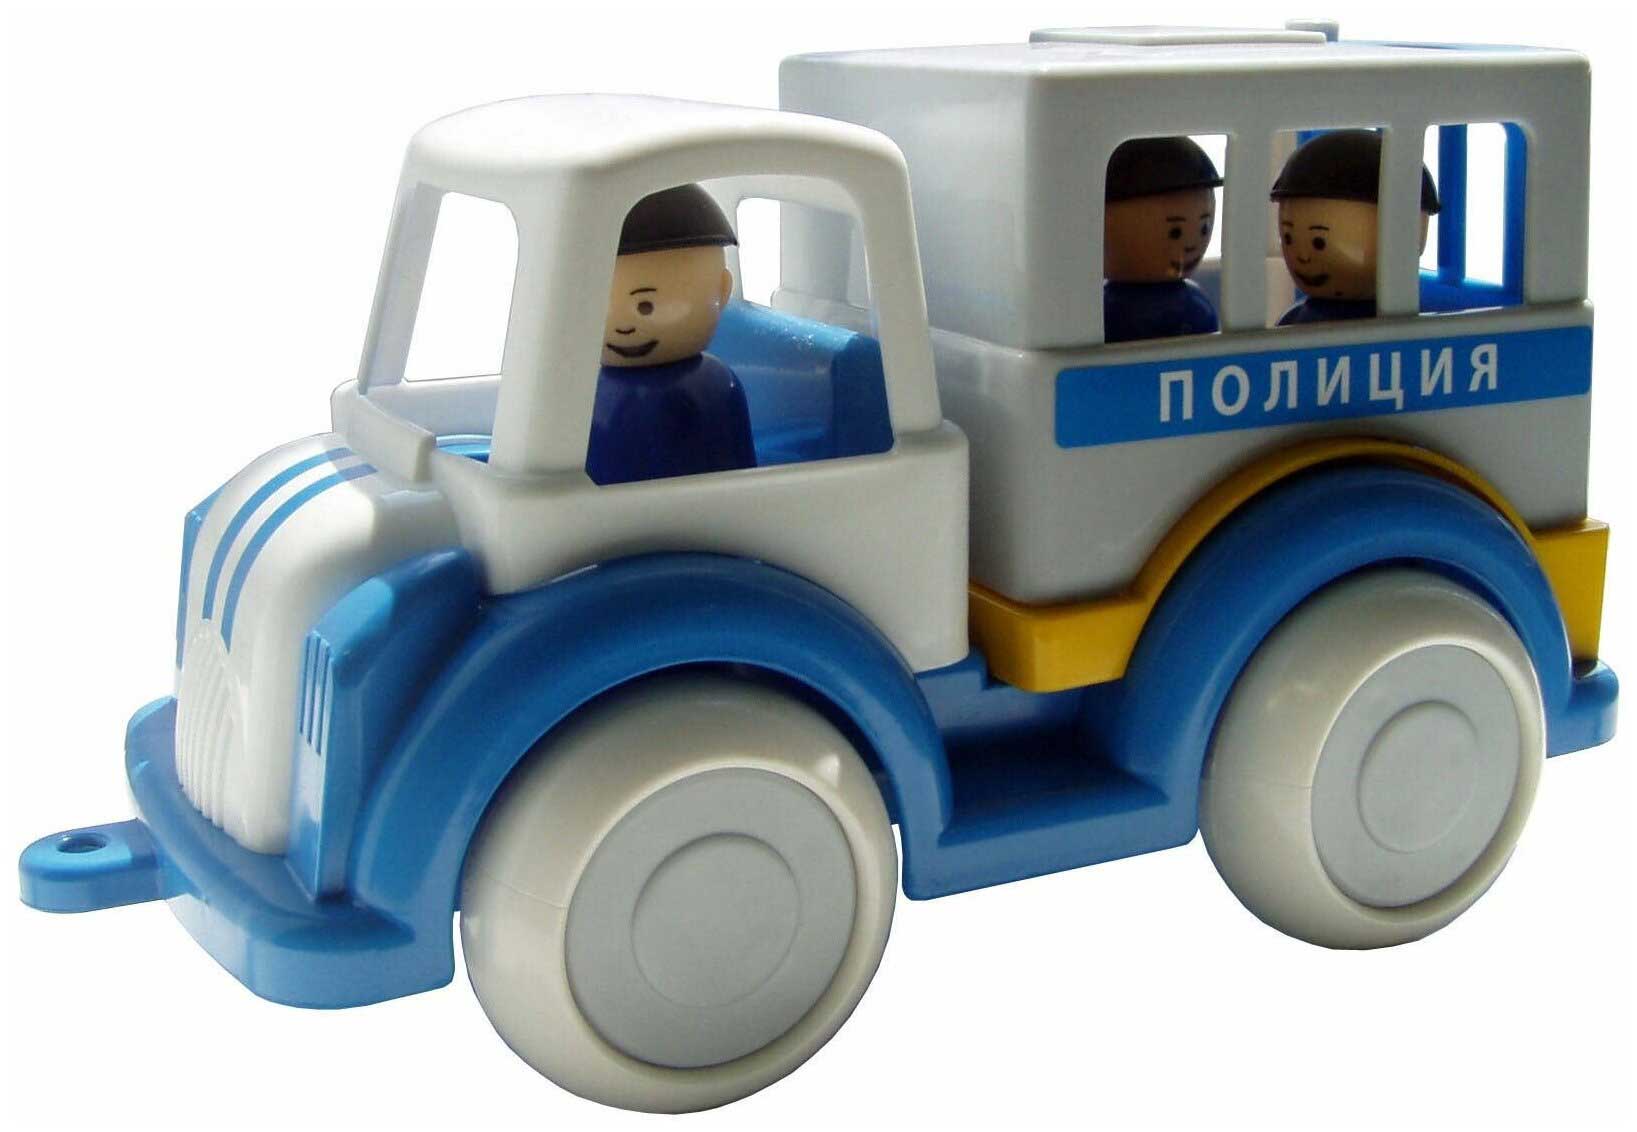 бульдозер форма детский сад с 75 ф 17 5 см голубой Машина Форма Полиция С-161-Ф Детский сад